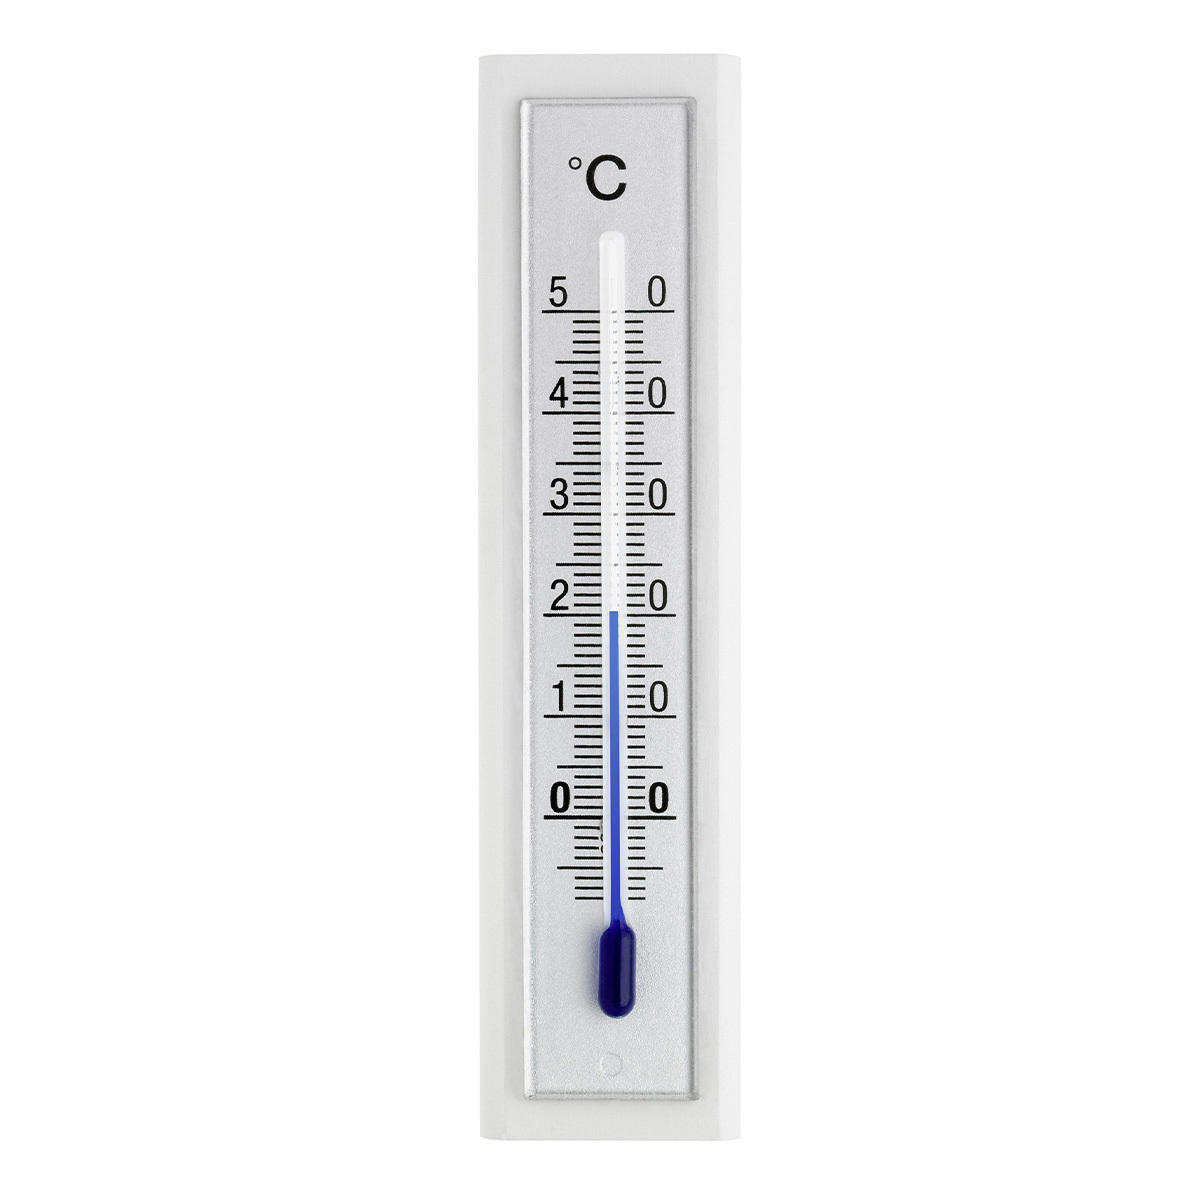 12-1043-09-analoges-innen-aussen-thermometer-buche-1200x1200px.jpg